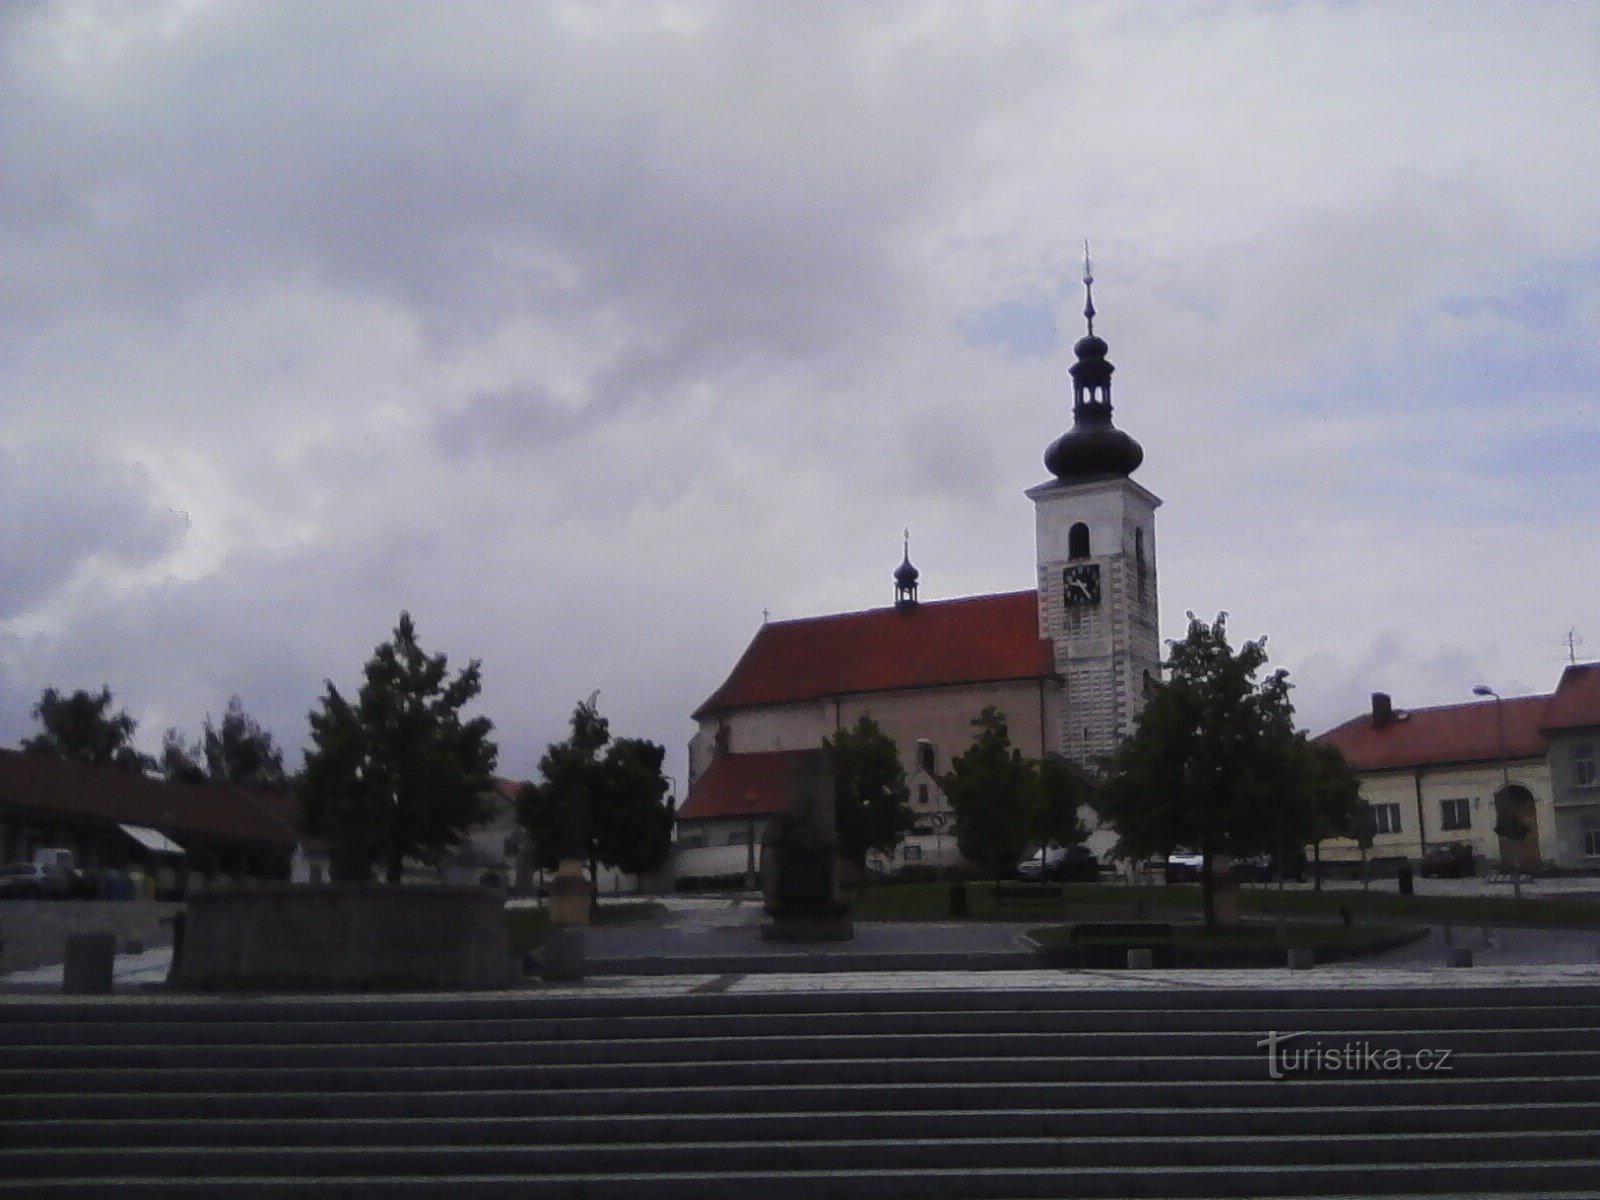 2. Crkva sv. Vavřine u Prčici.